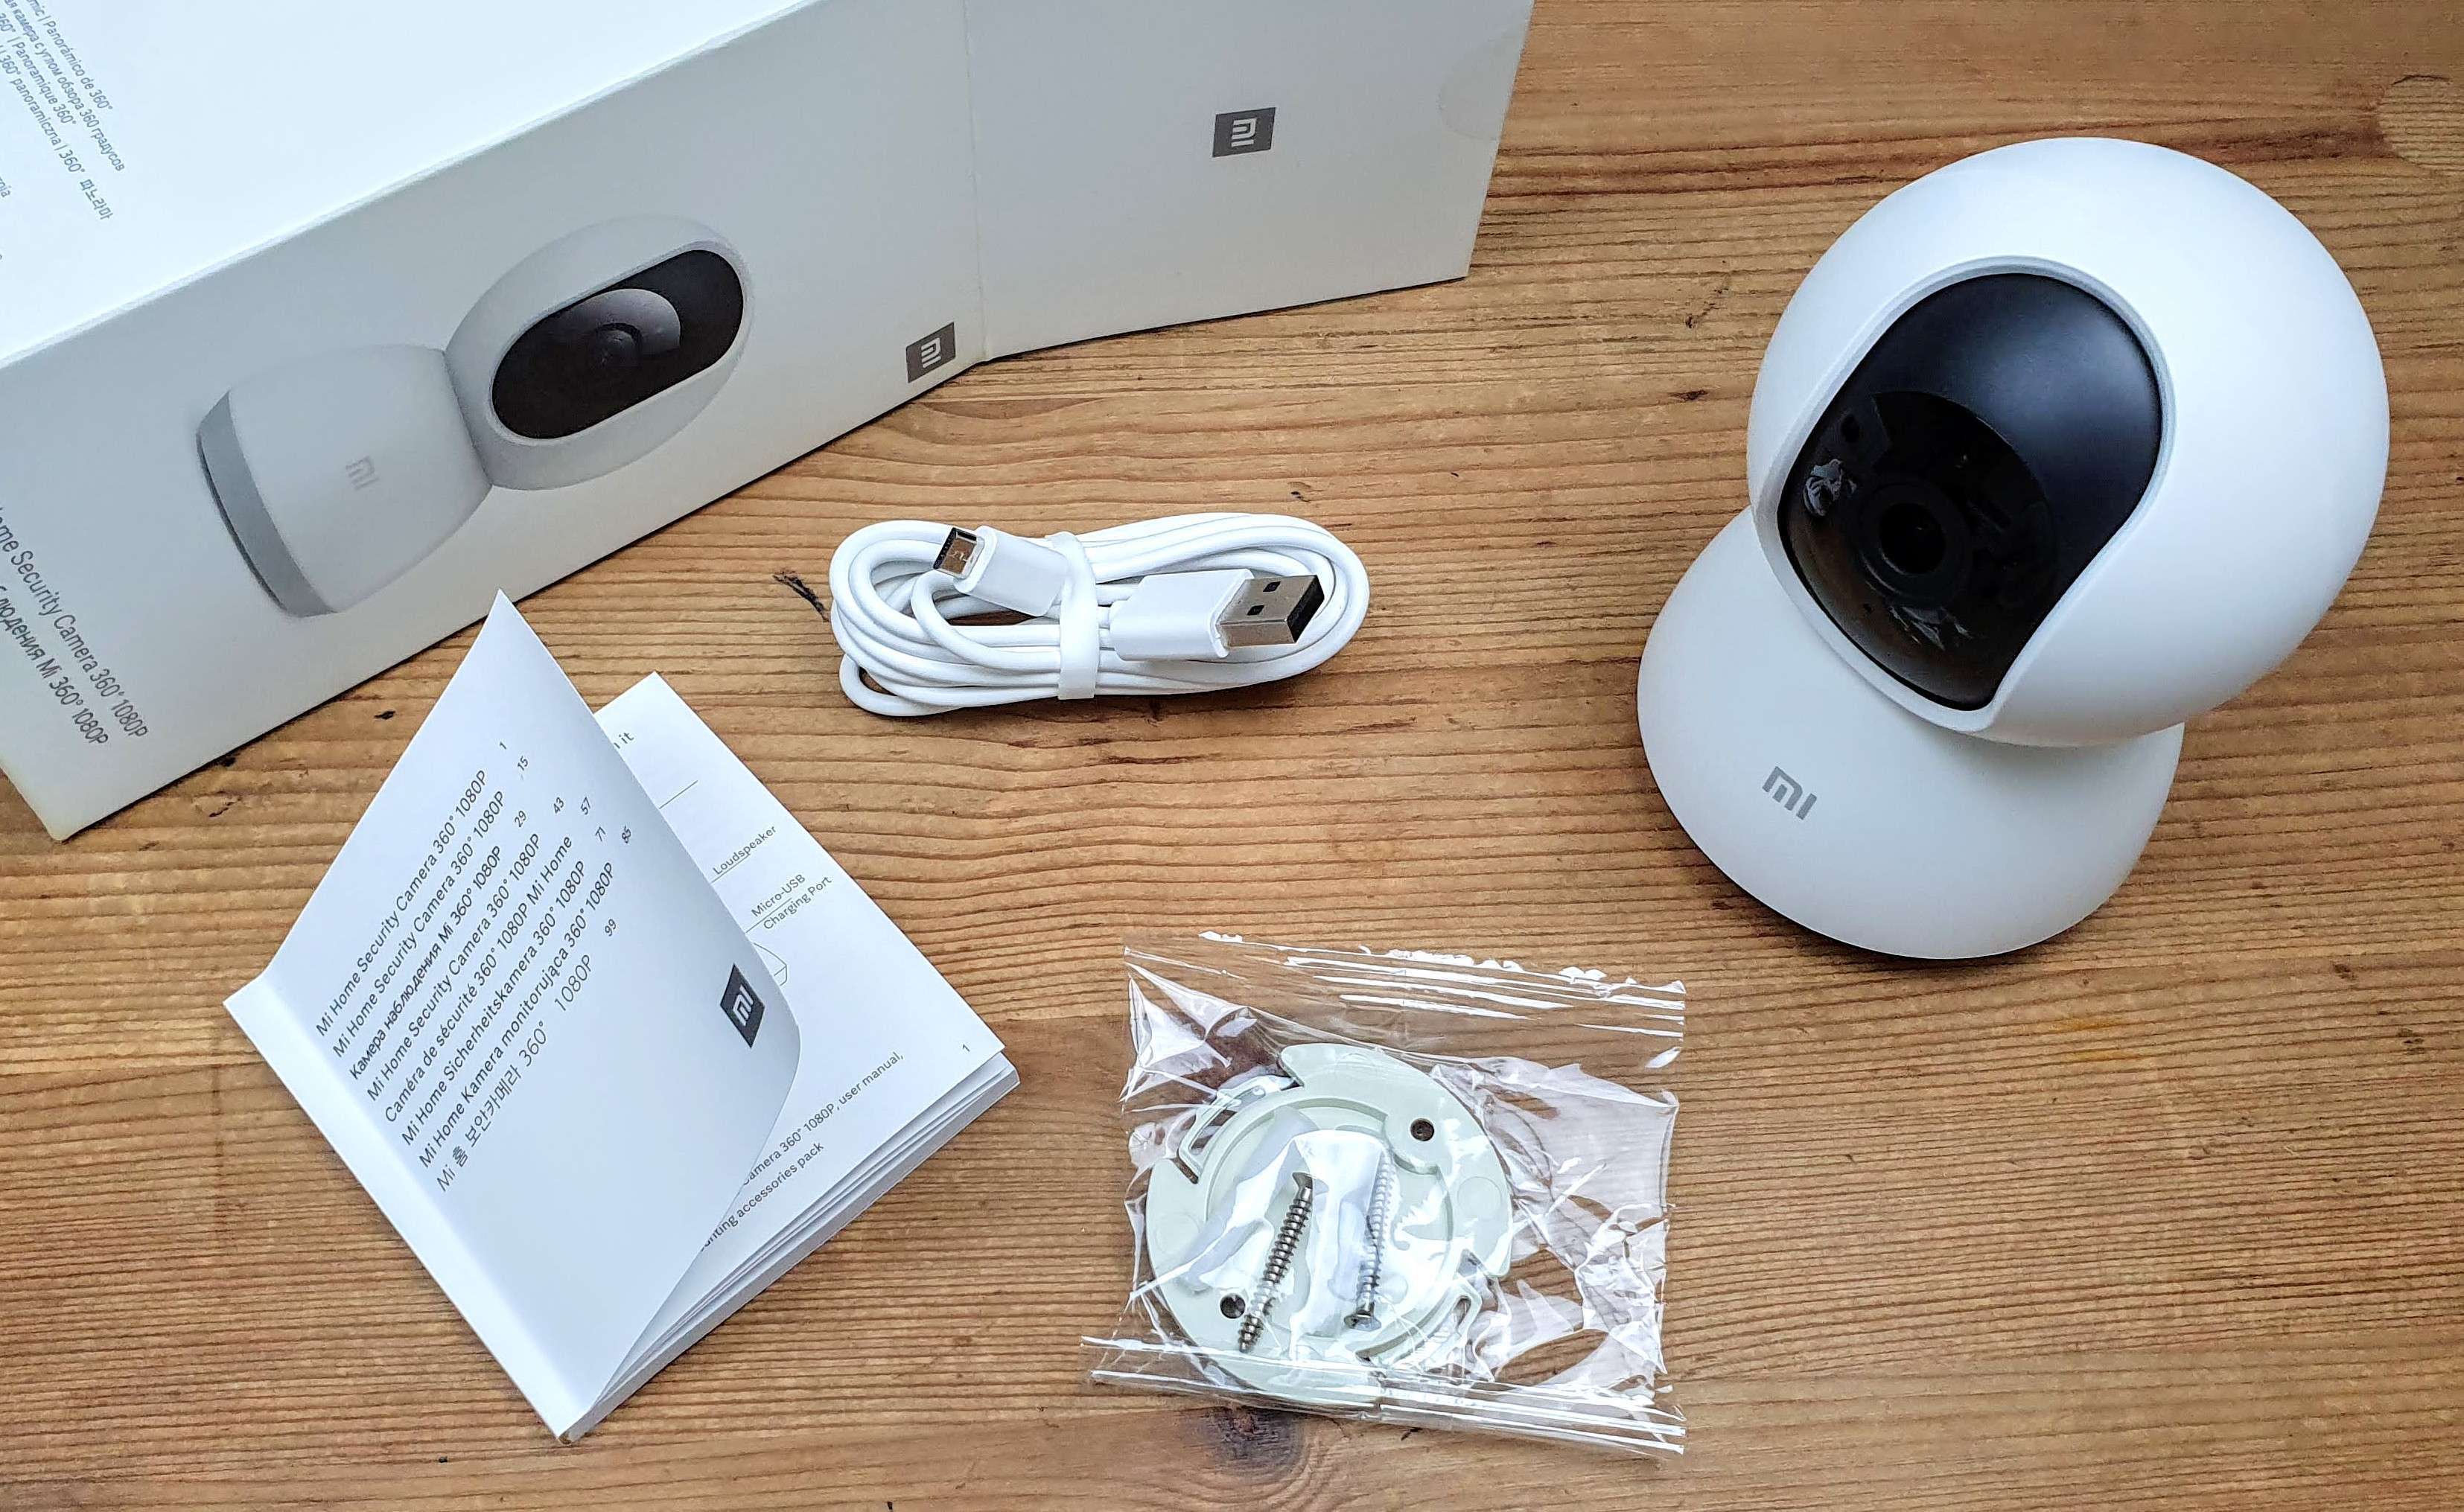 Rotating Home Security Camera